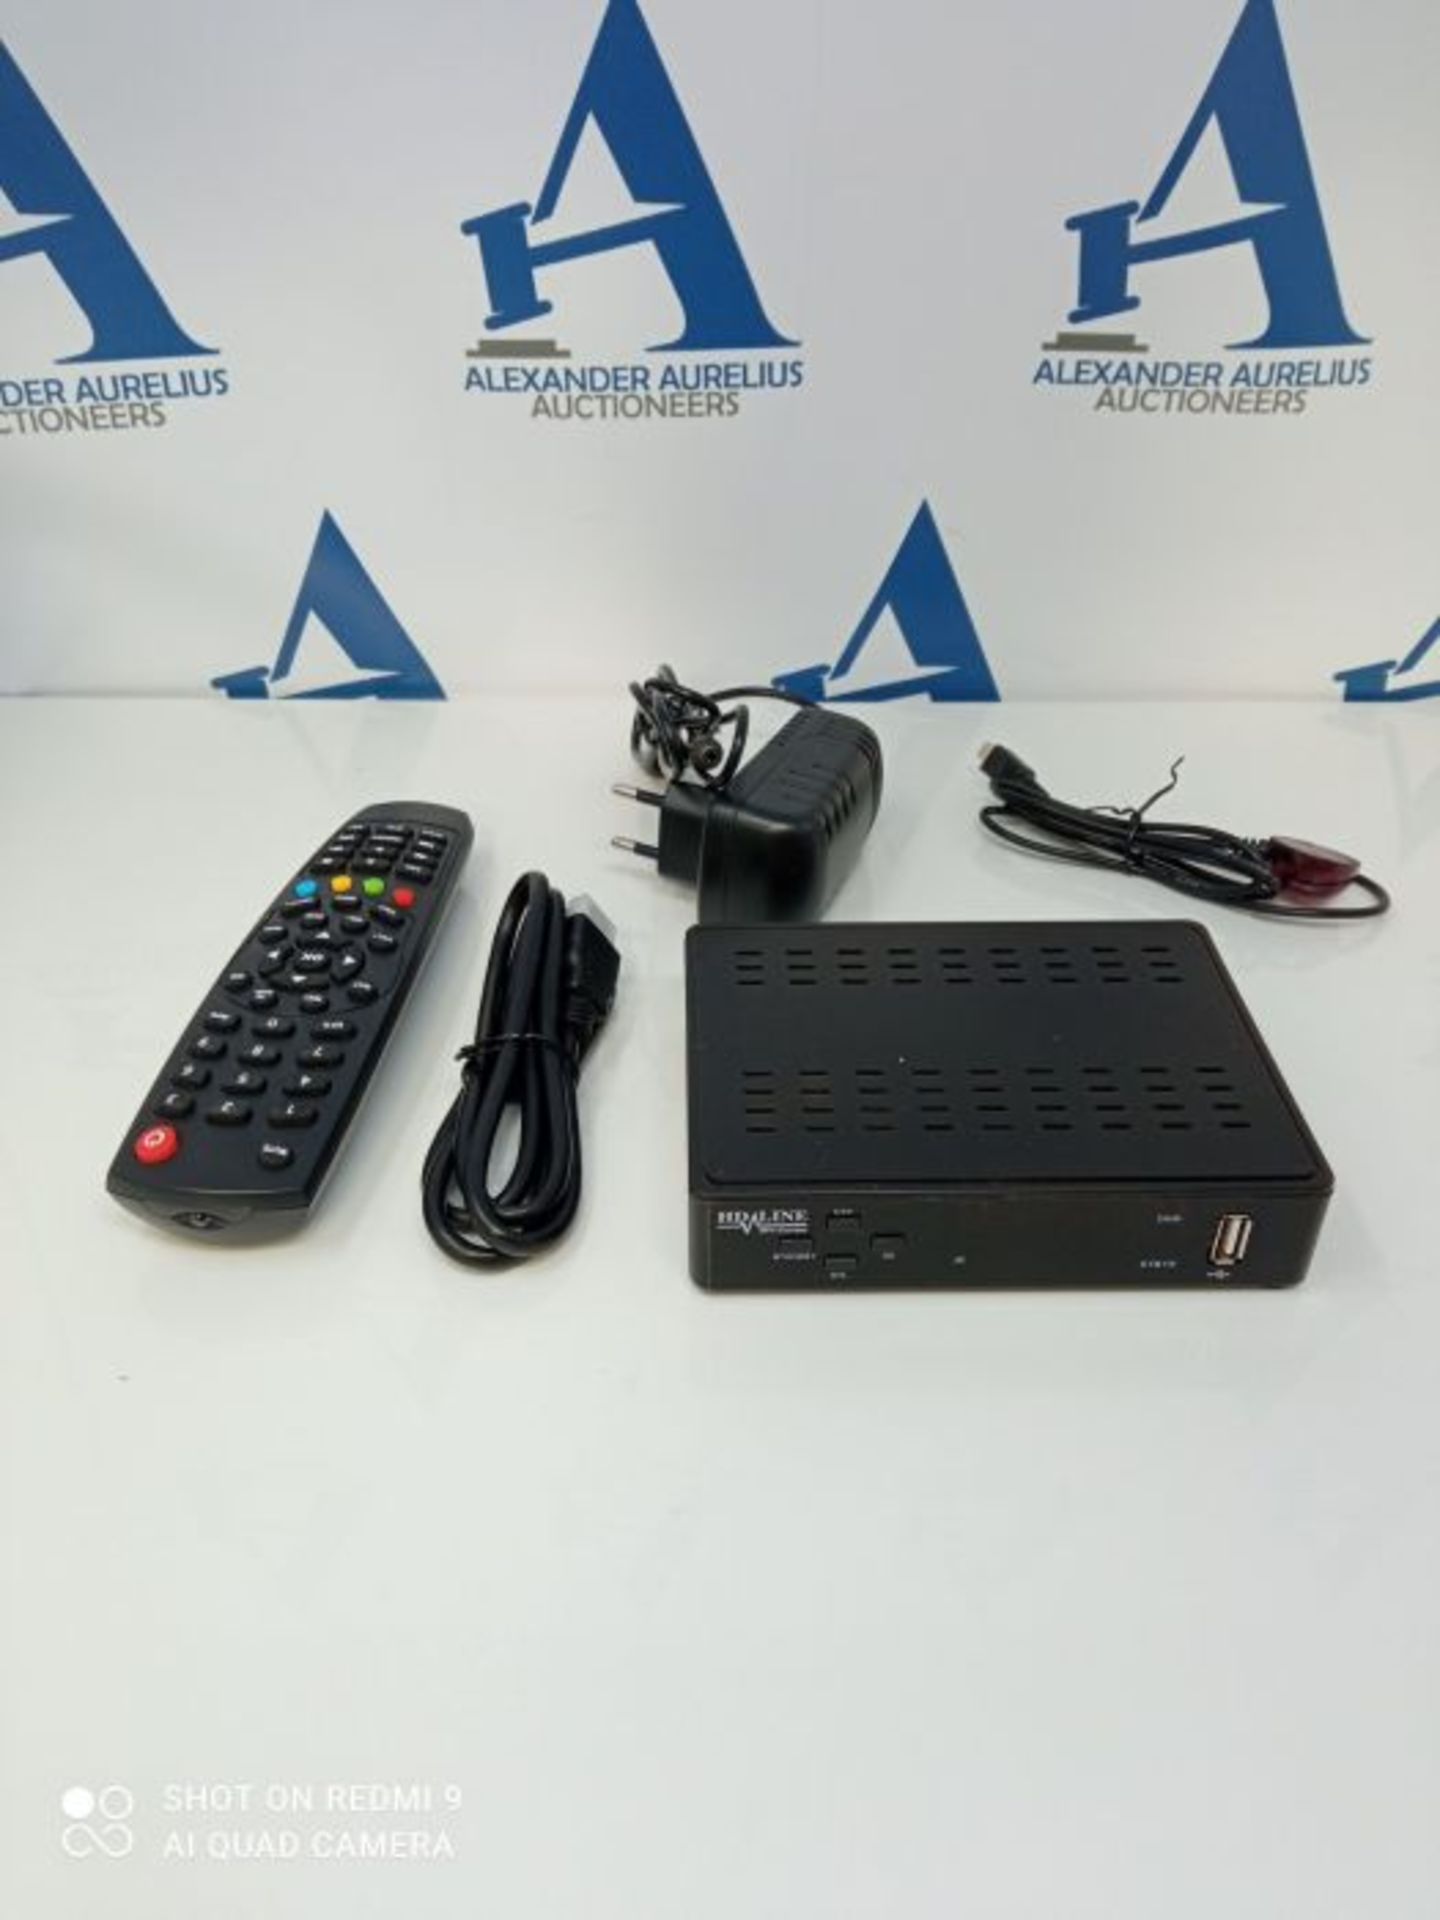 hd-line Tivusat Satelliten SAT Receiver (HDTV, WiFi, DVB-S/S2, HDMI, AV, 2X USB 2.0,) - Image 3 of 3